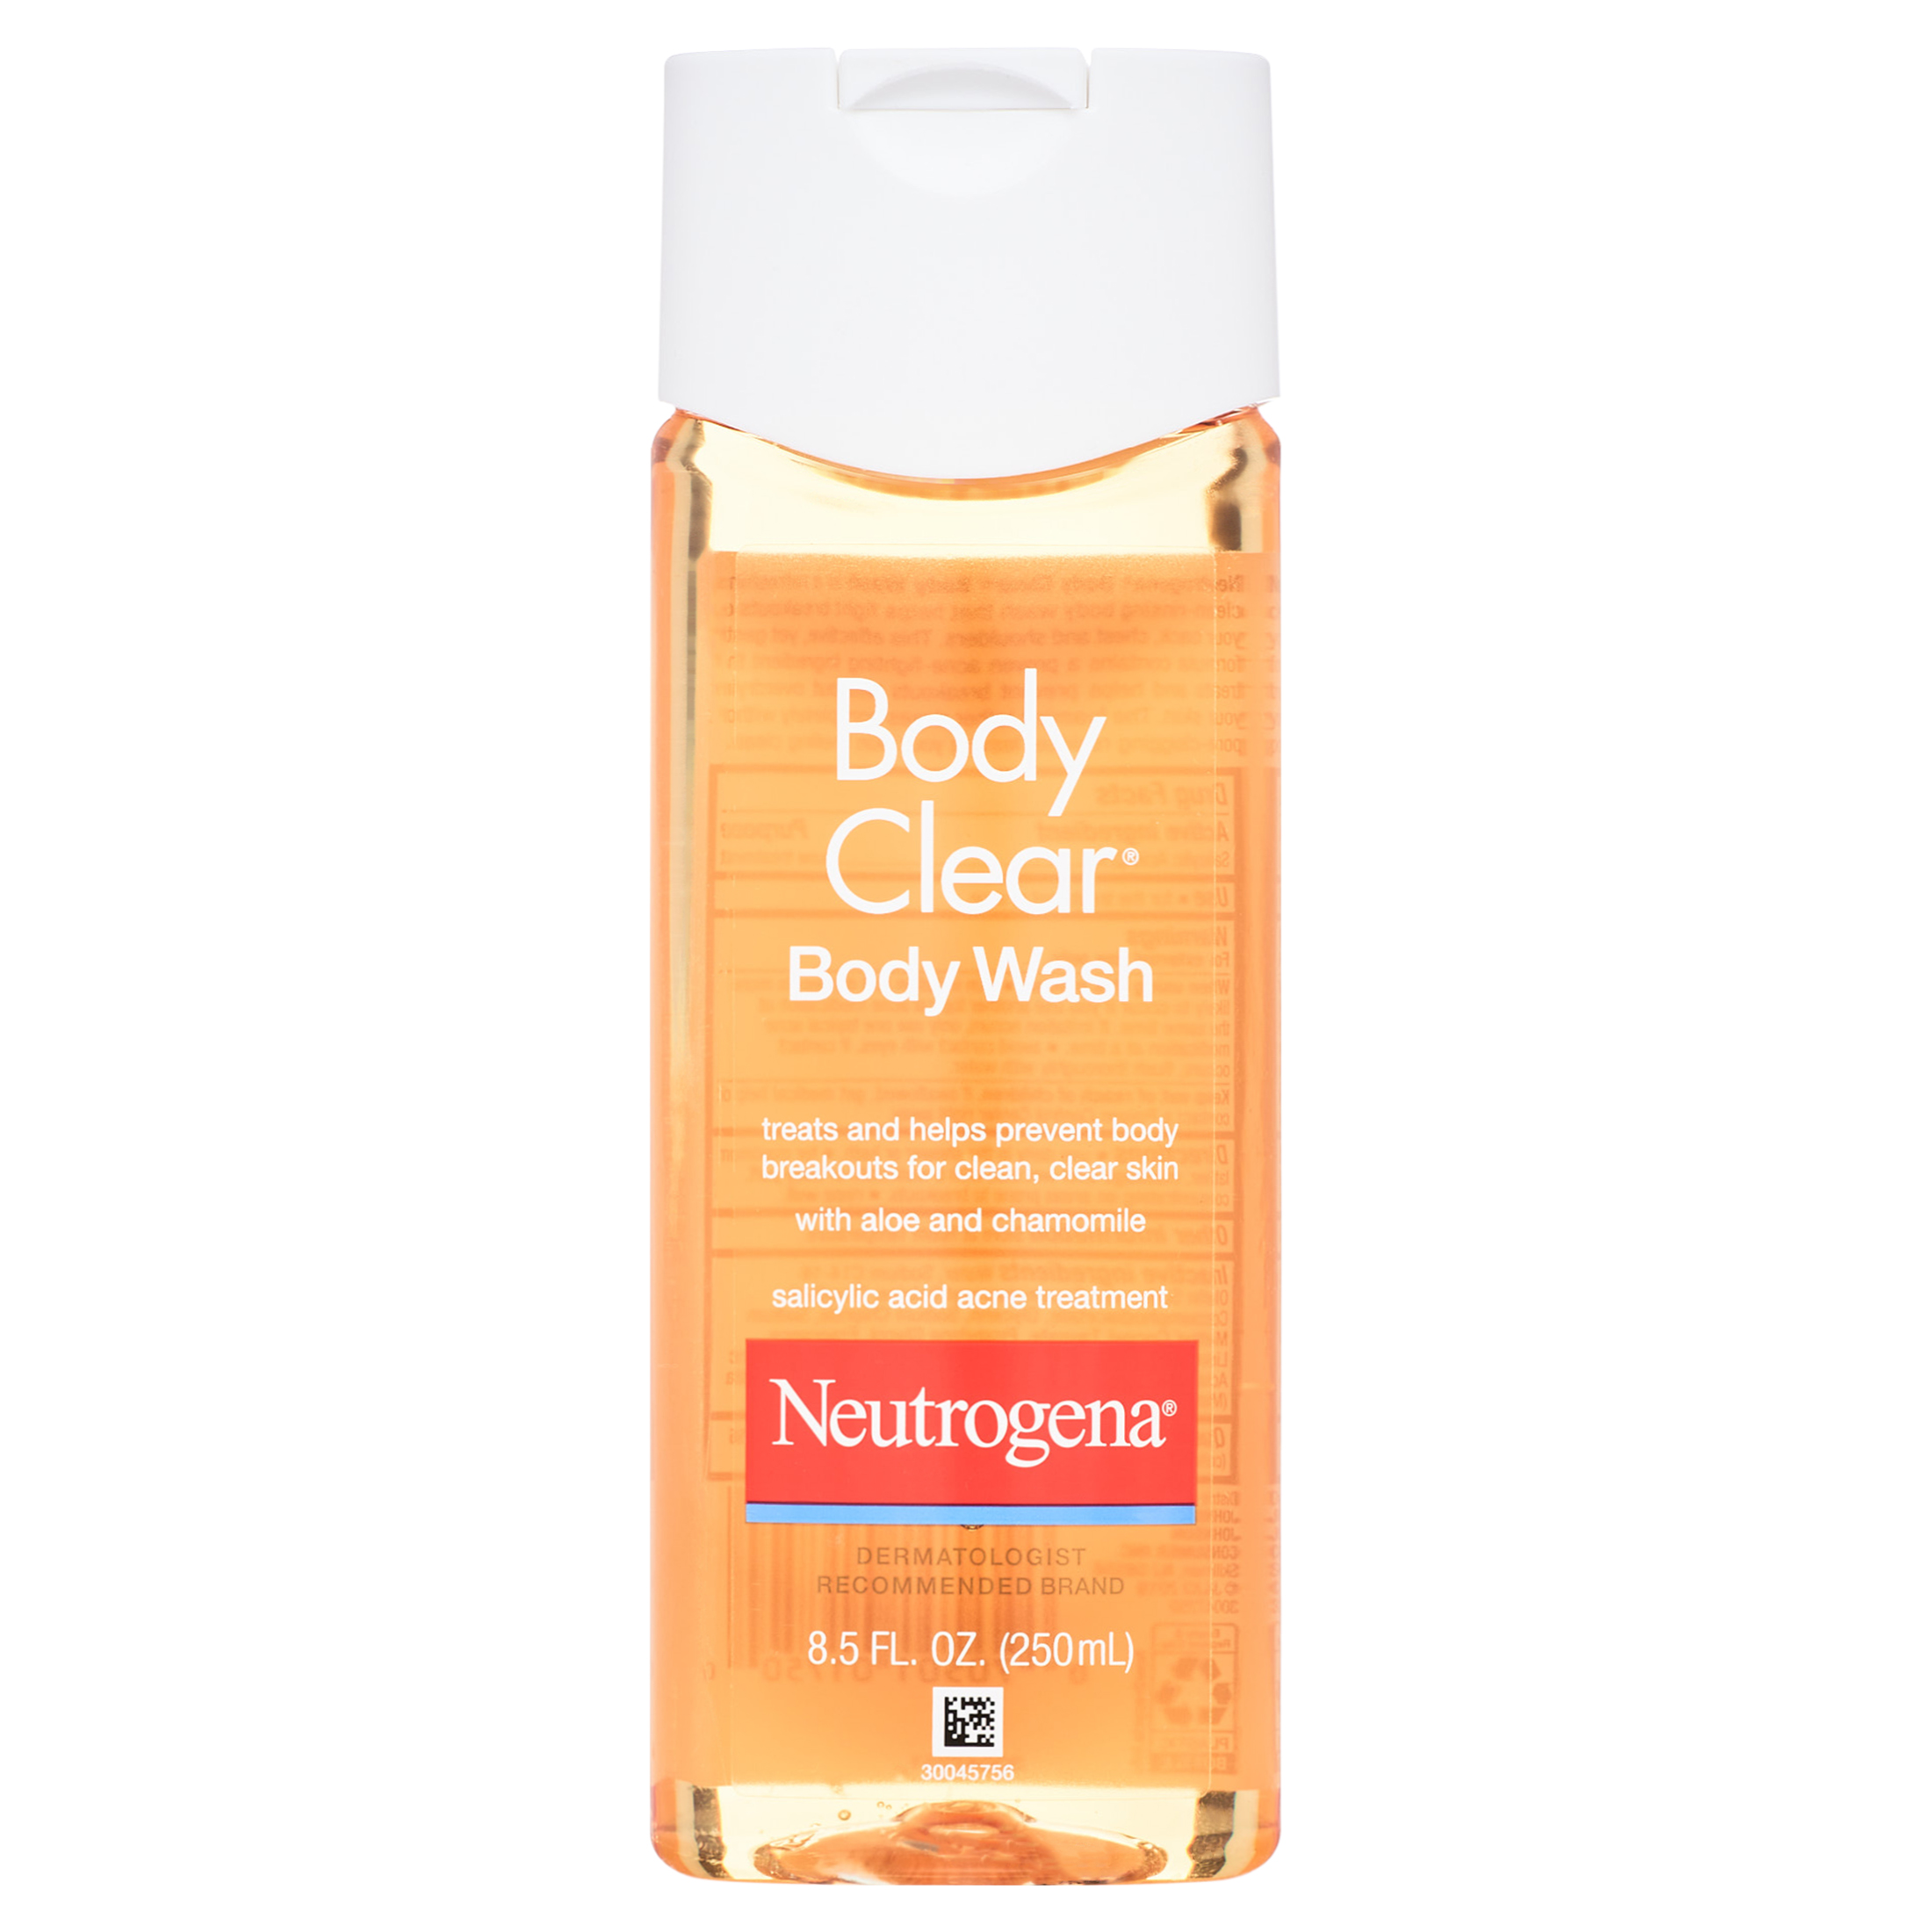 Neutrogena Body Clear Acne Body Wash, 2% Salicylic Acid, 8.5 fl. oz - image 1 of 9